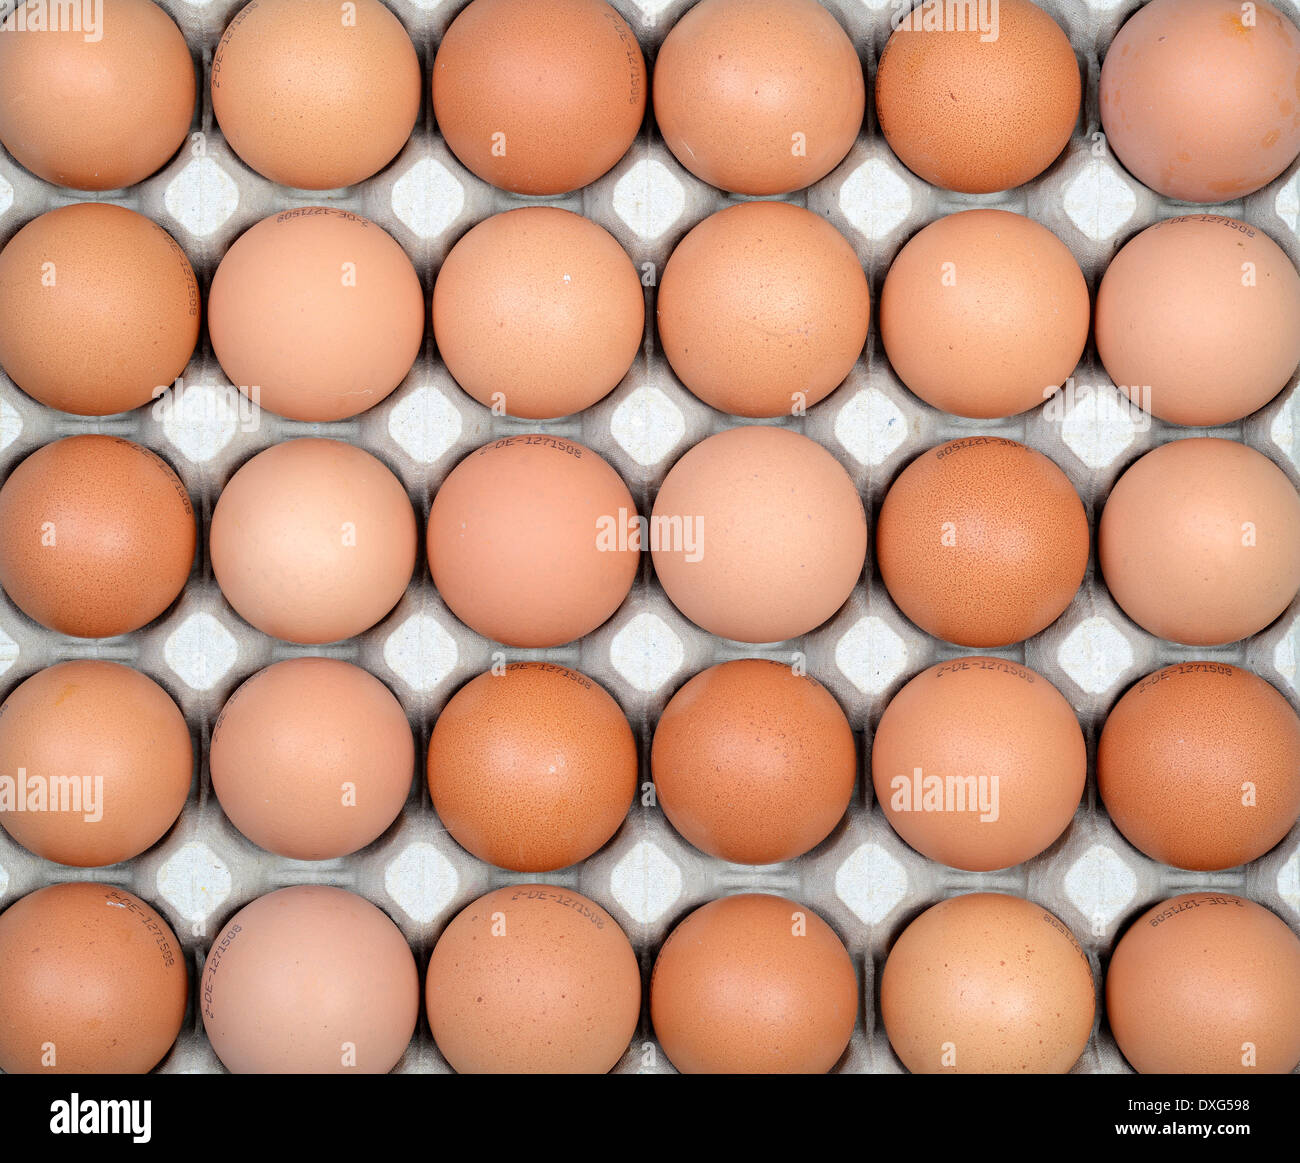 Los huevos de gallina, marrón Foto de stock